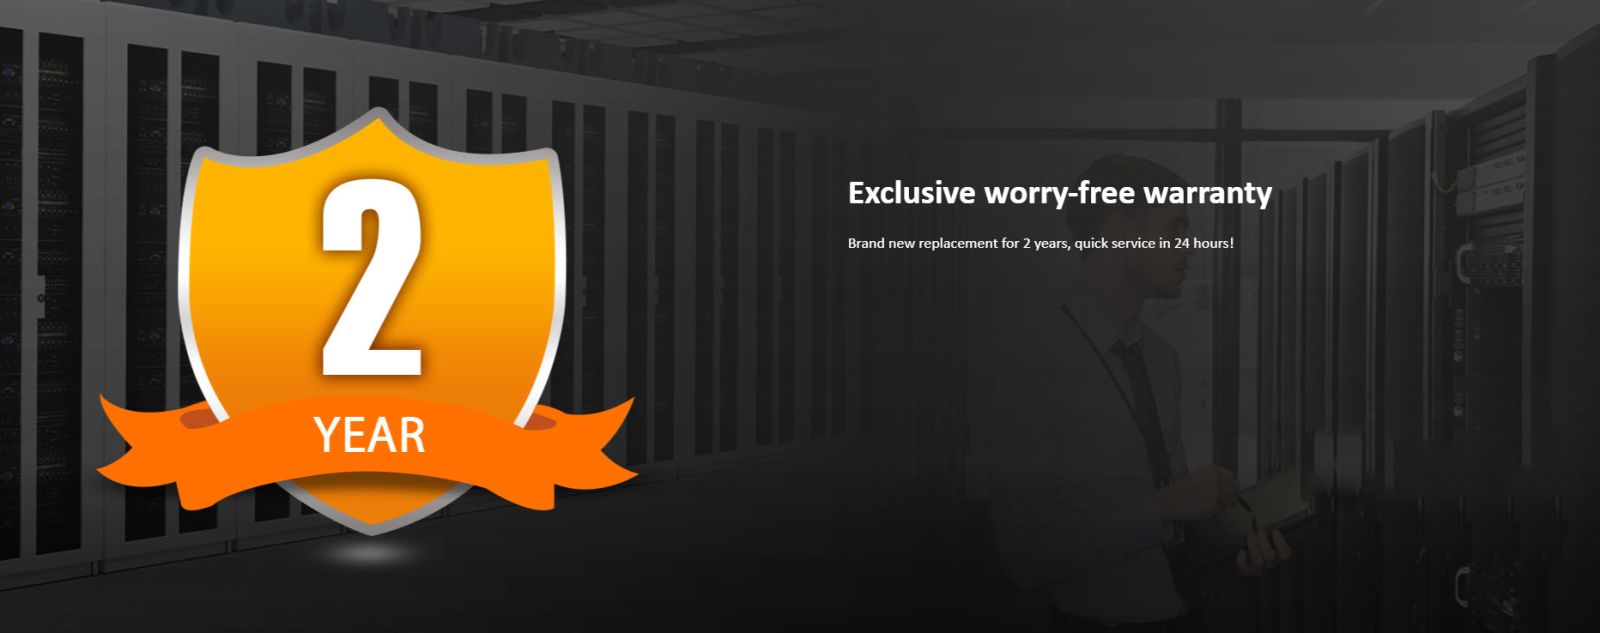 Exlusive worry-free Warranty